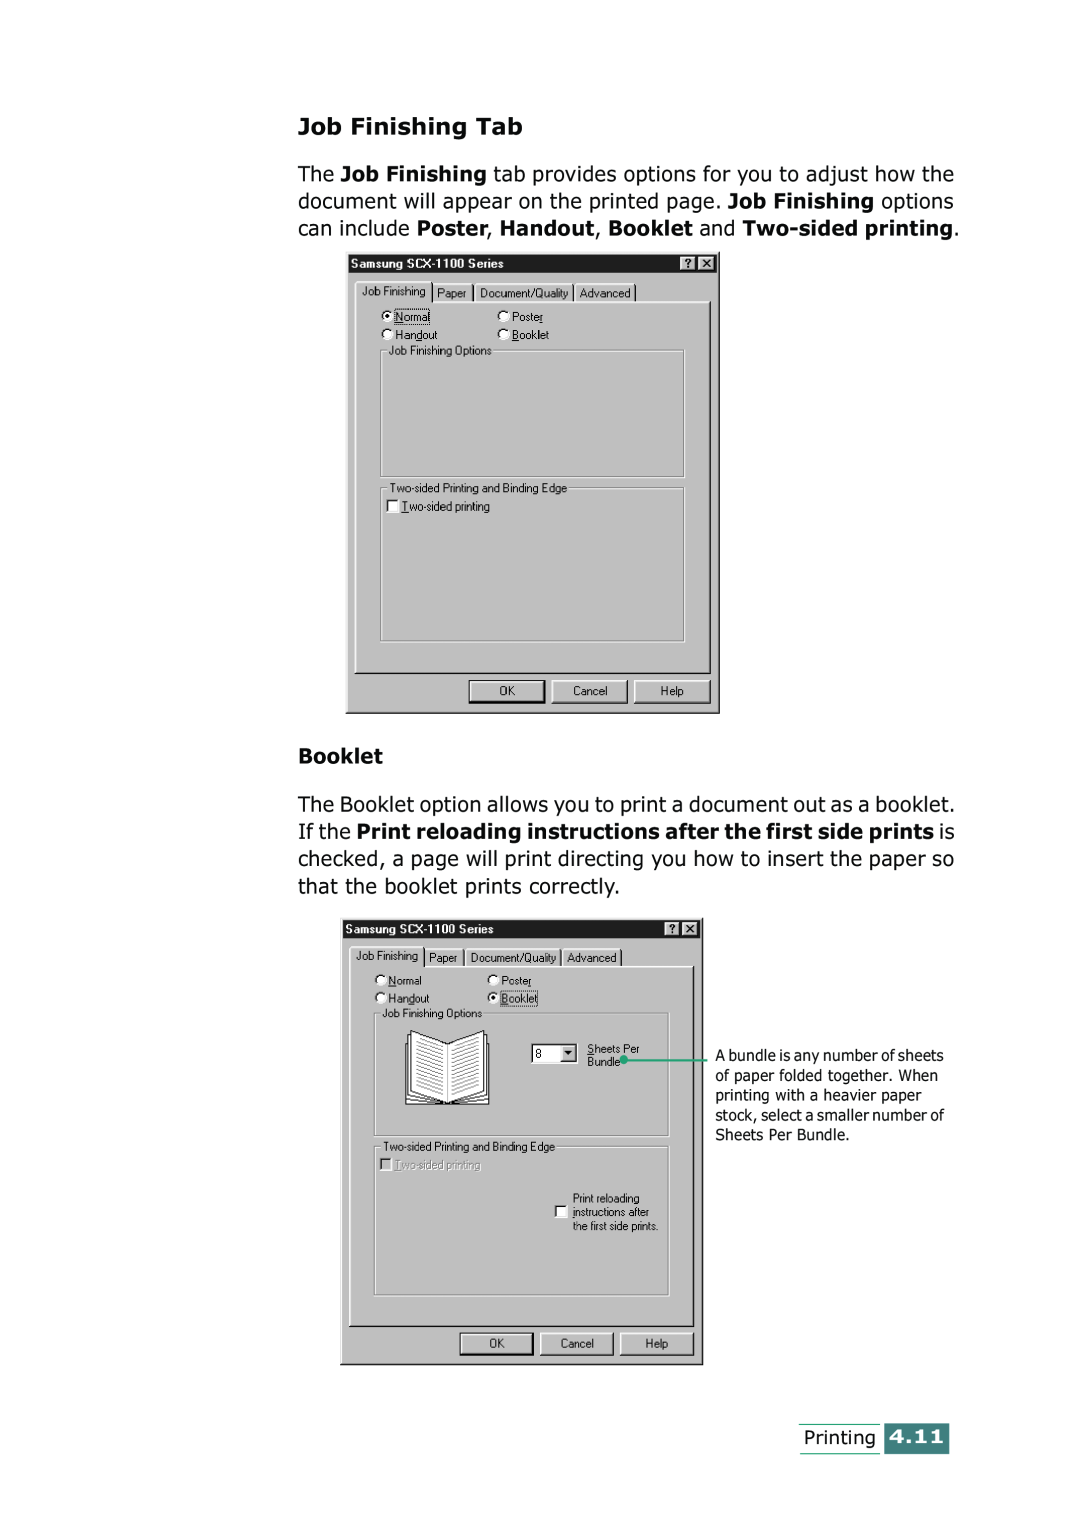 Samsung SCX-1100 manual Job Finishing Tab, Booklet 